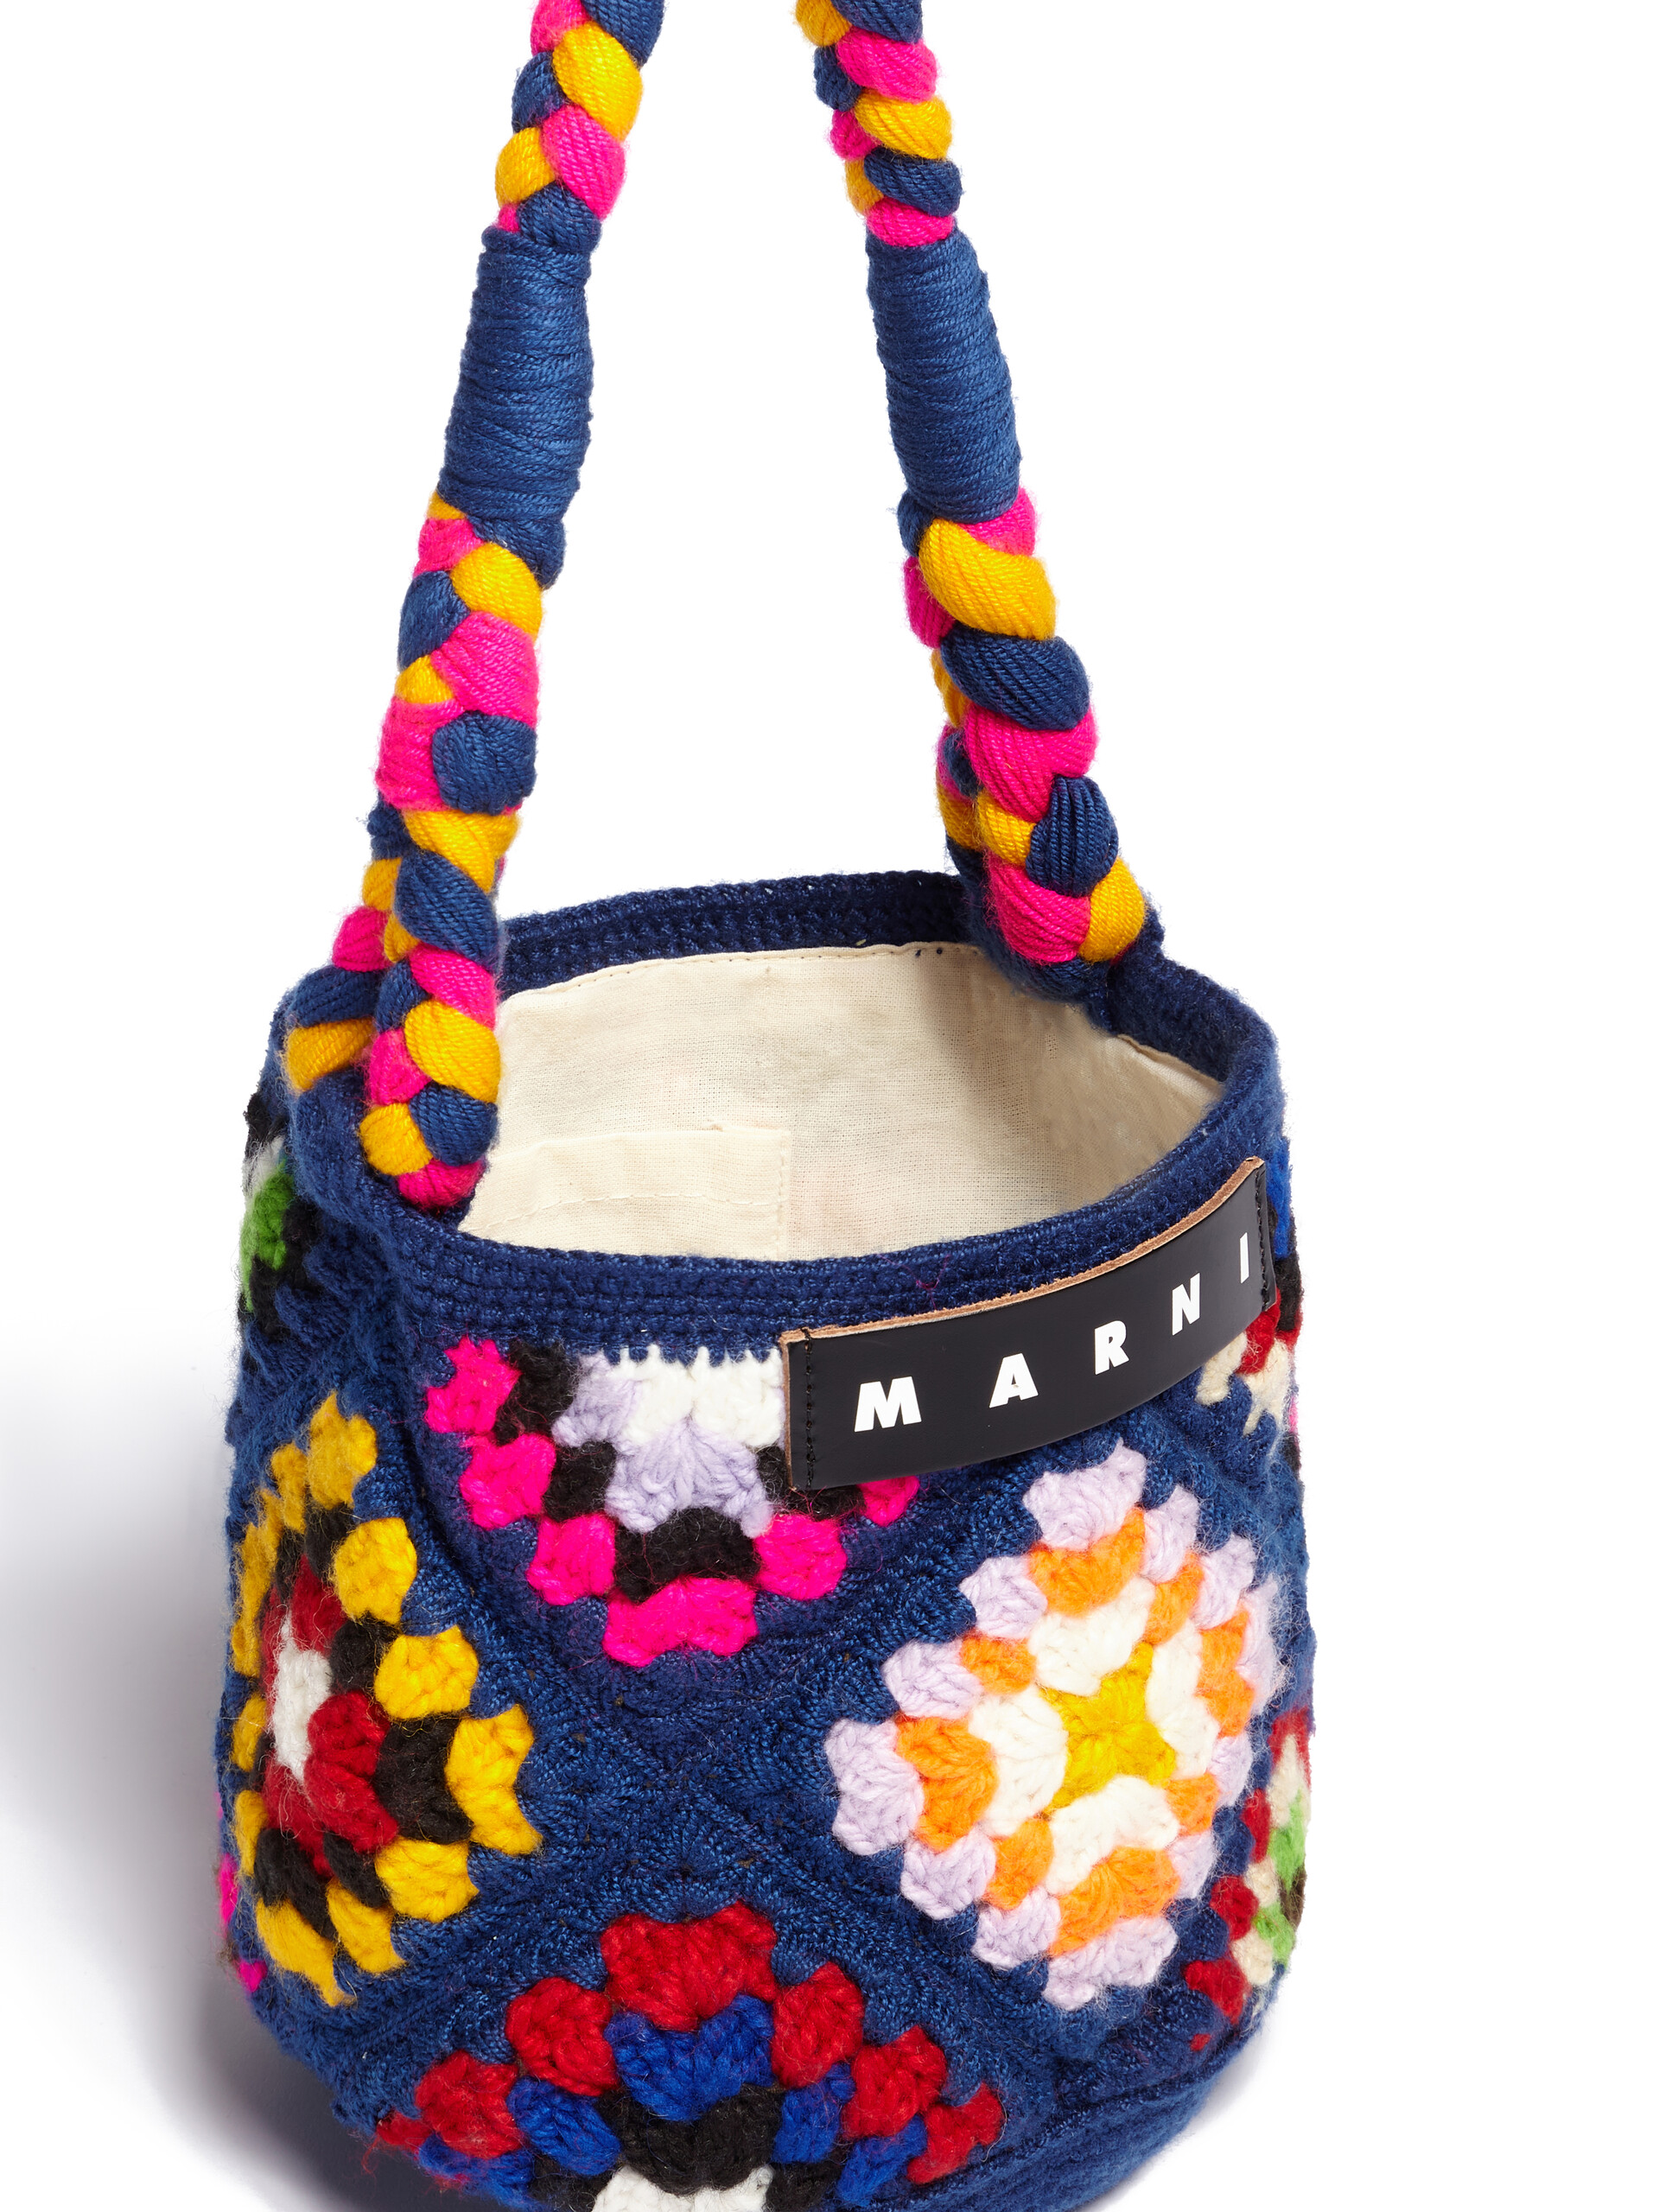 MARNI MARKET HAMMOCK BAG in multicolor crochet